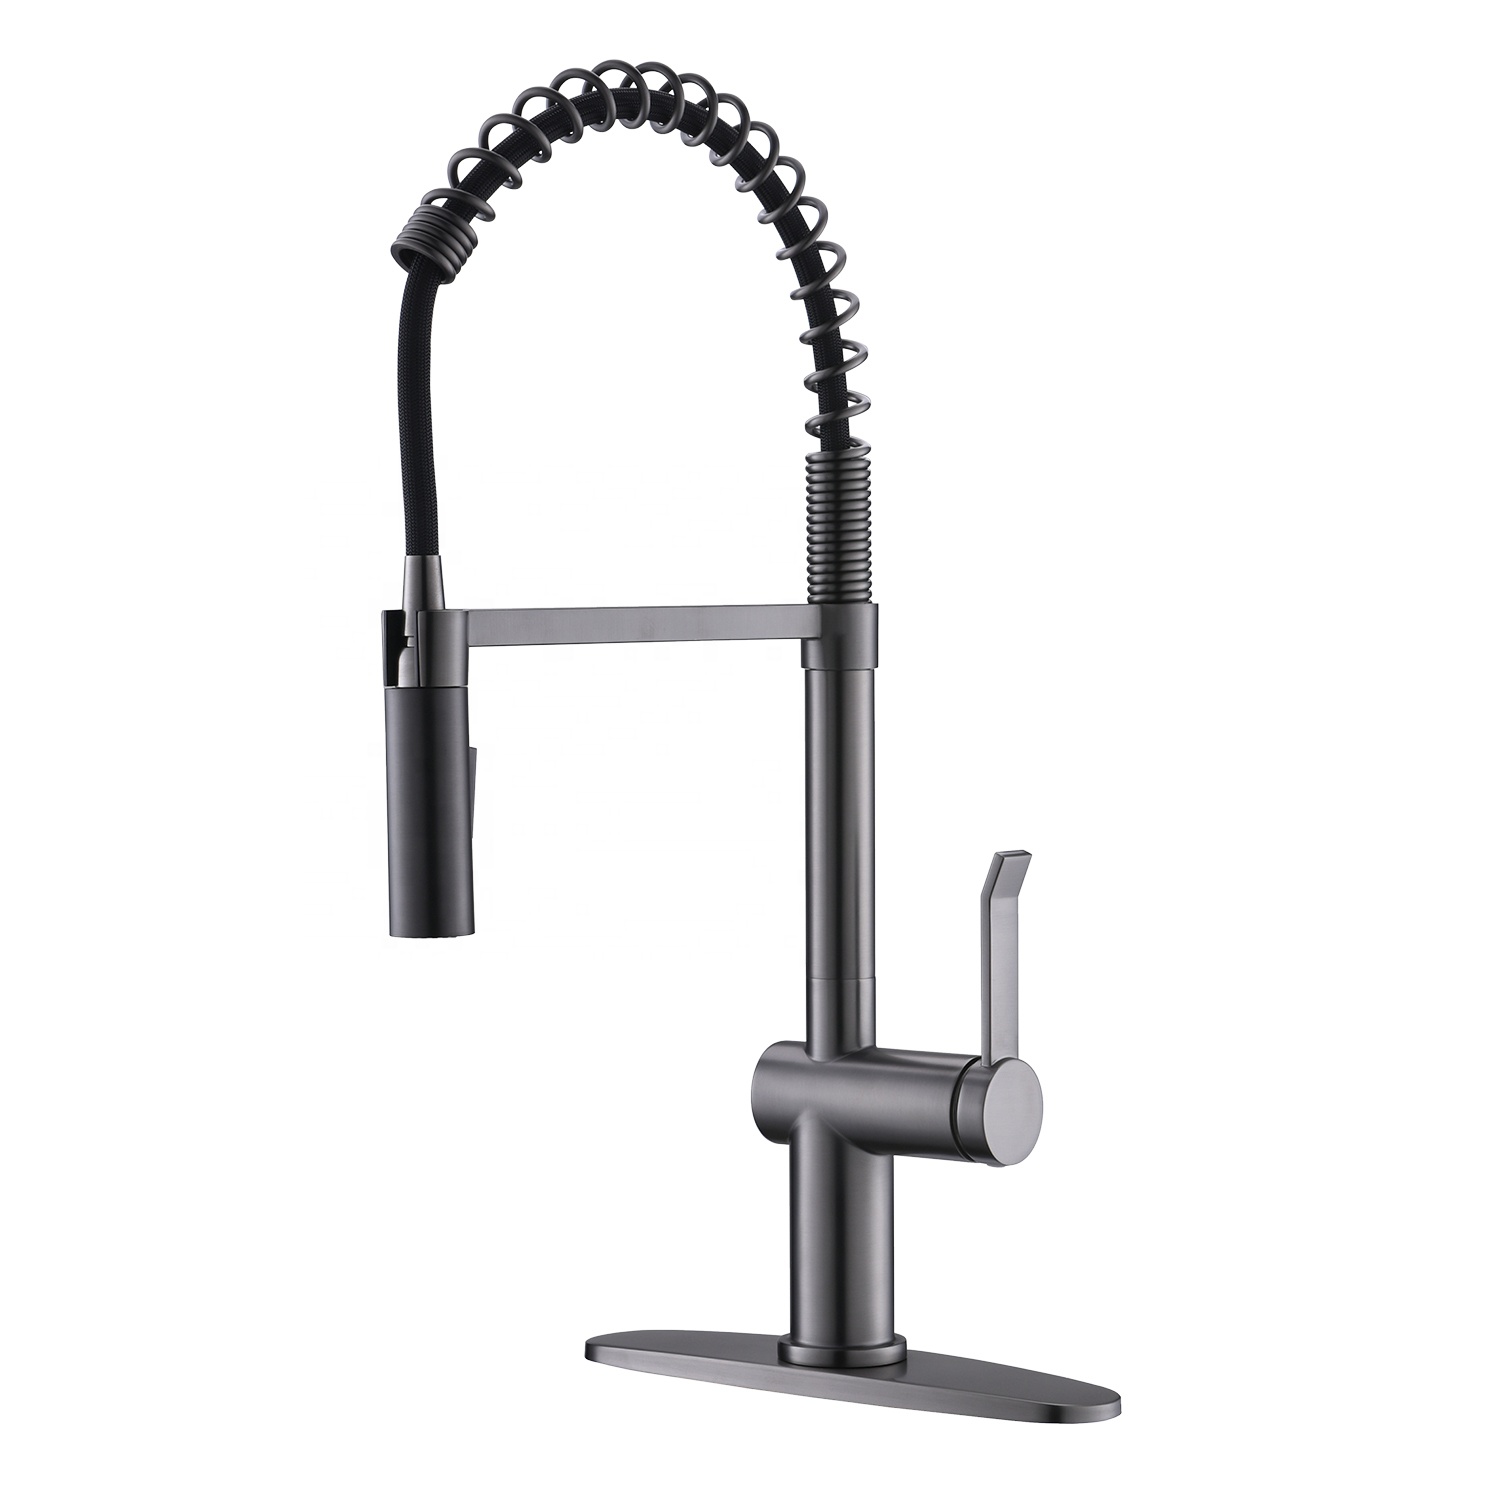 2021 robinet de cuisine moderne à tirette robinet de cuisine chaud et froid robinet d'évier de cuisine robinet de bassin